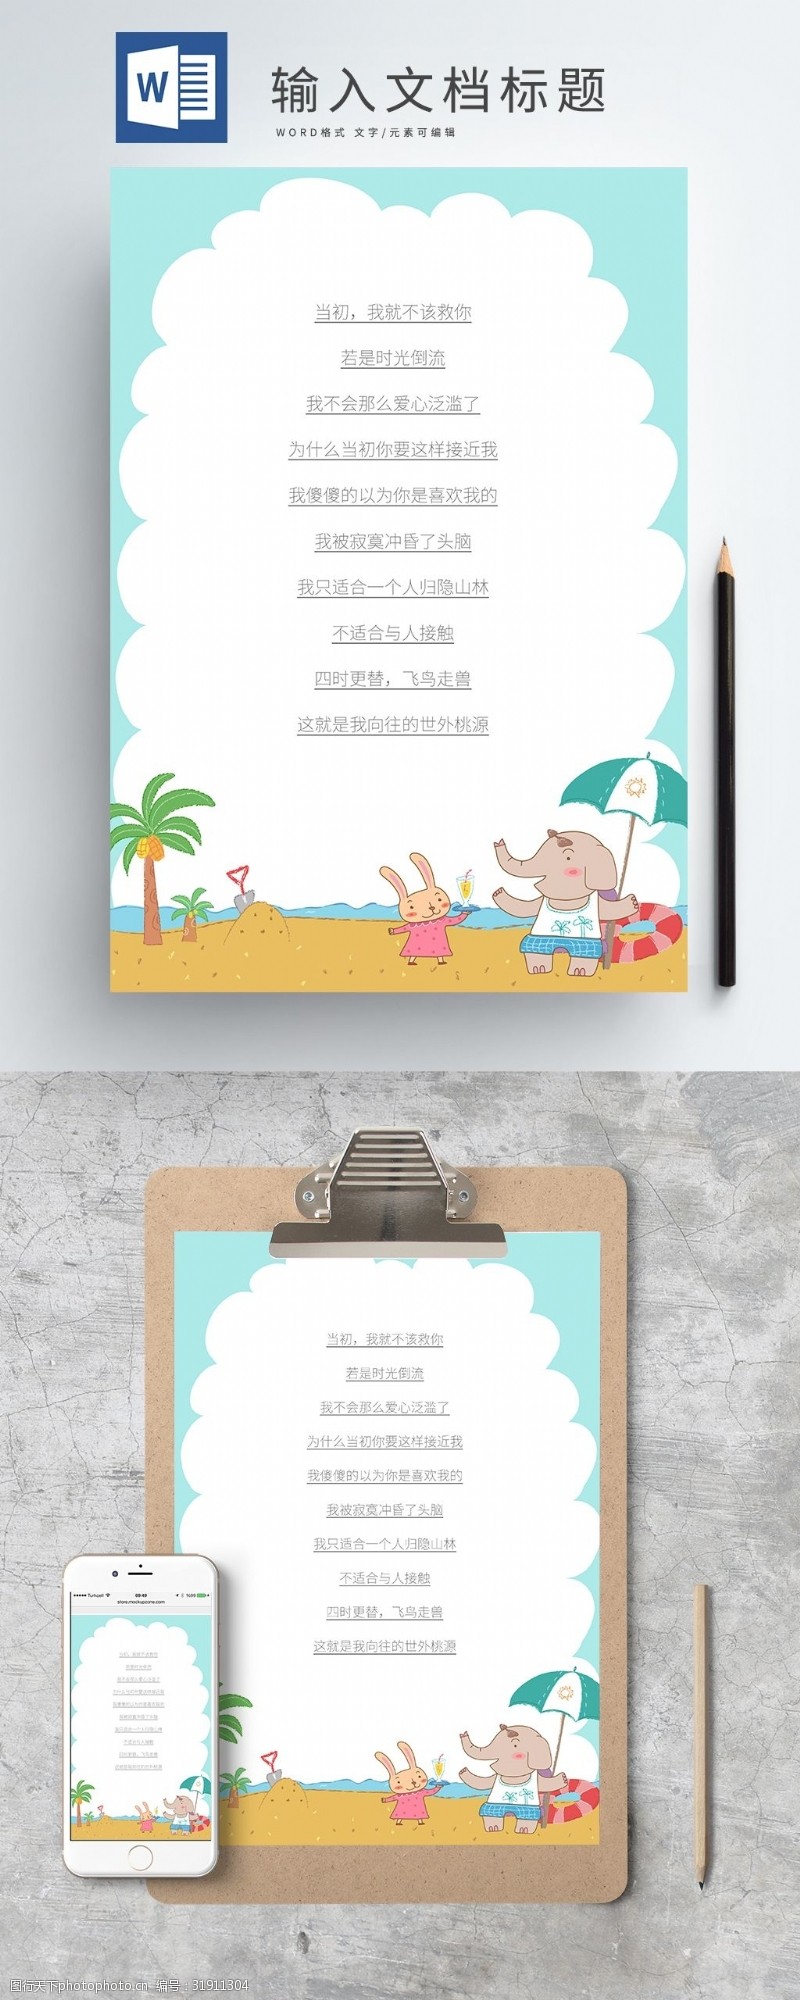 动物卡通模板下载手绘水彩卡通海边背景a4信纸模板下载